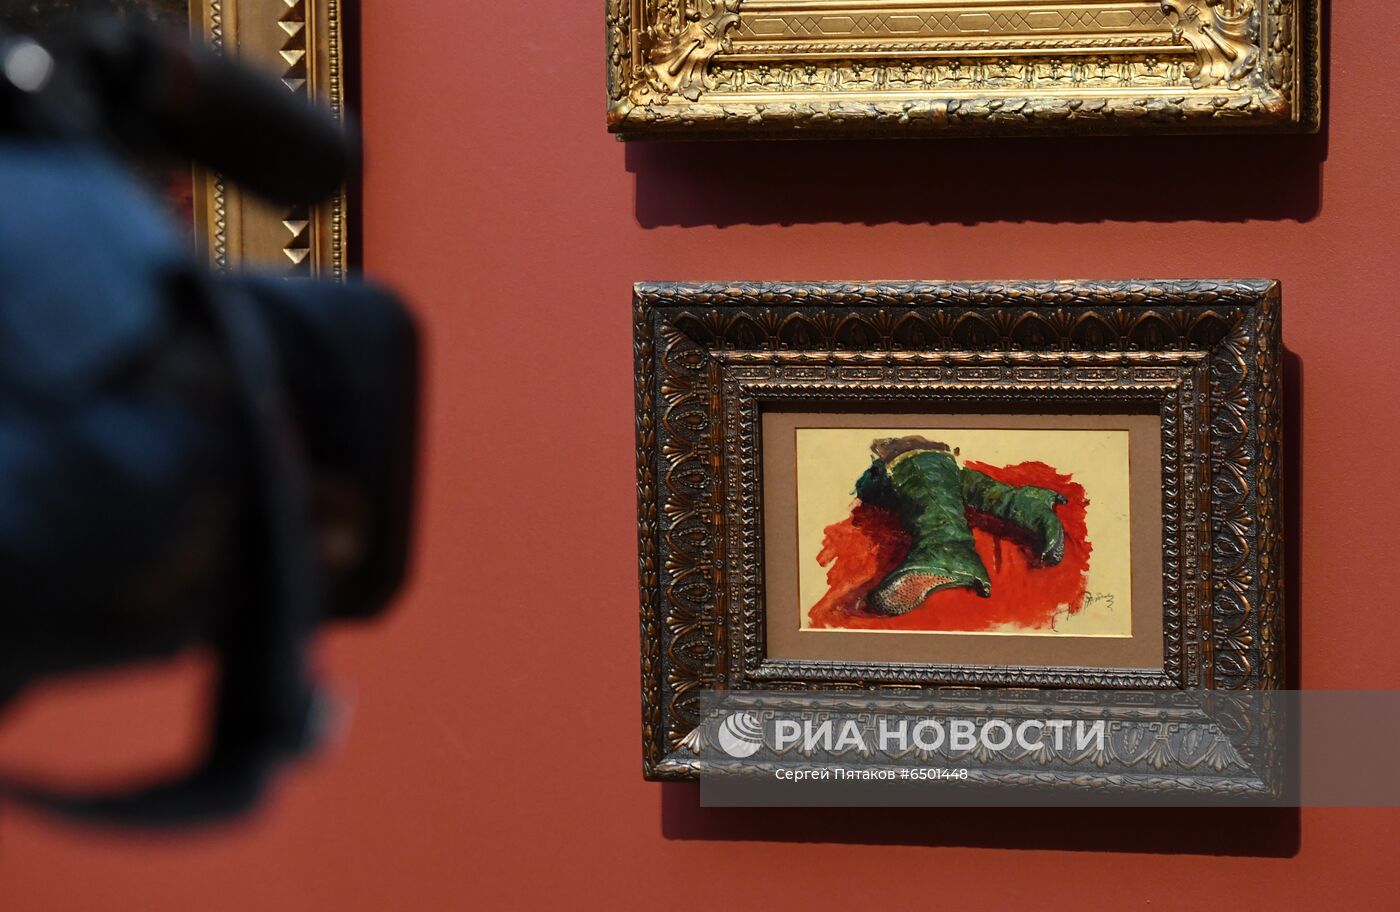 Выставка "Илья Репин: известный и неизвестный" в Третьяковской галерее